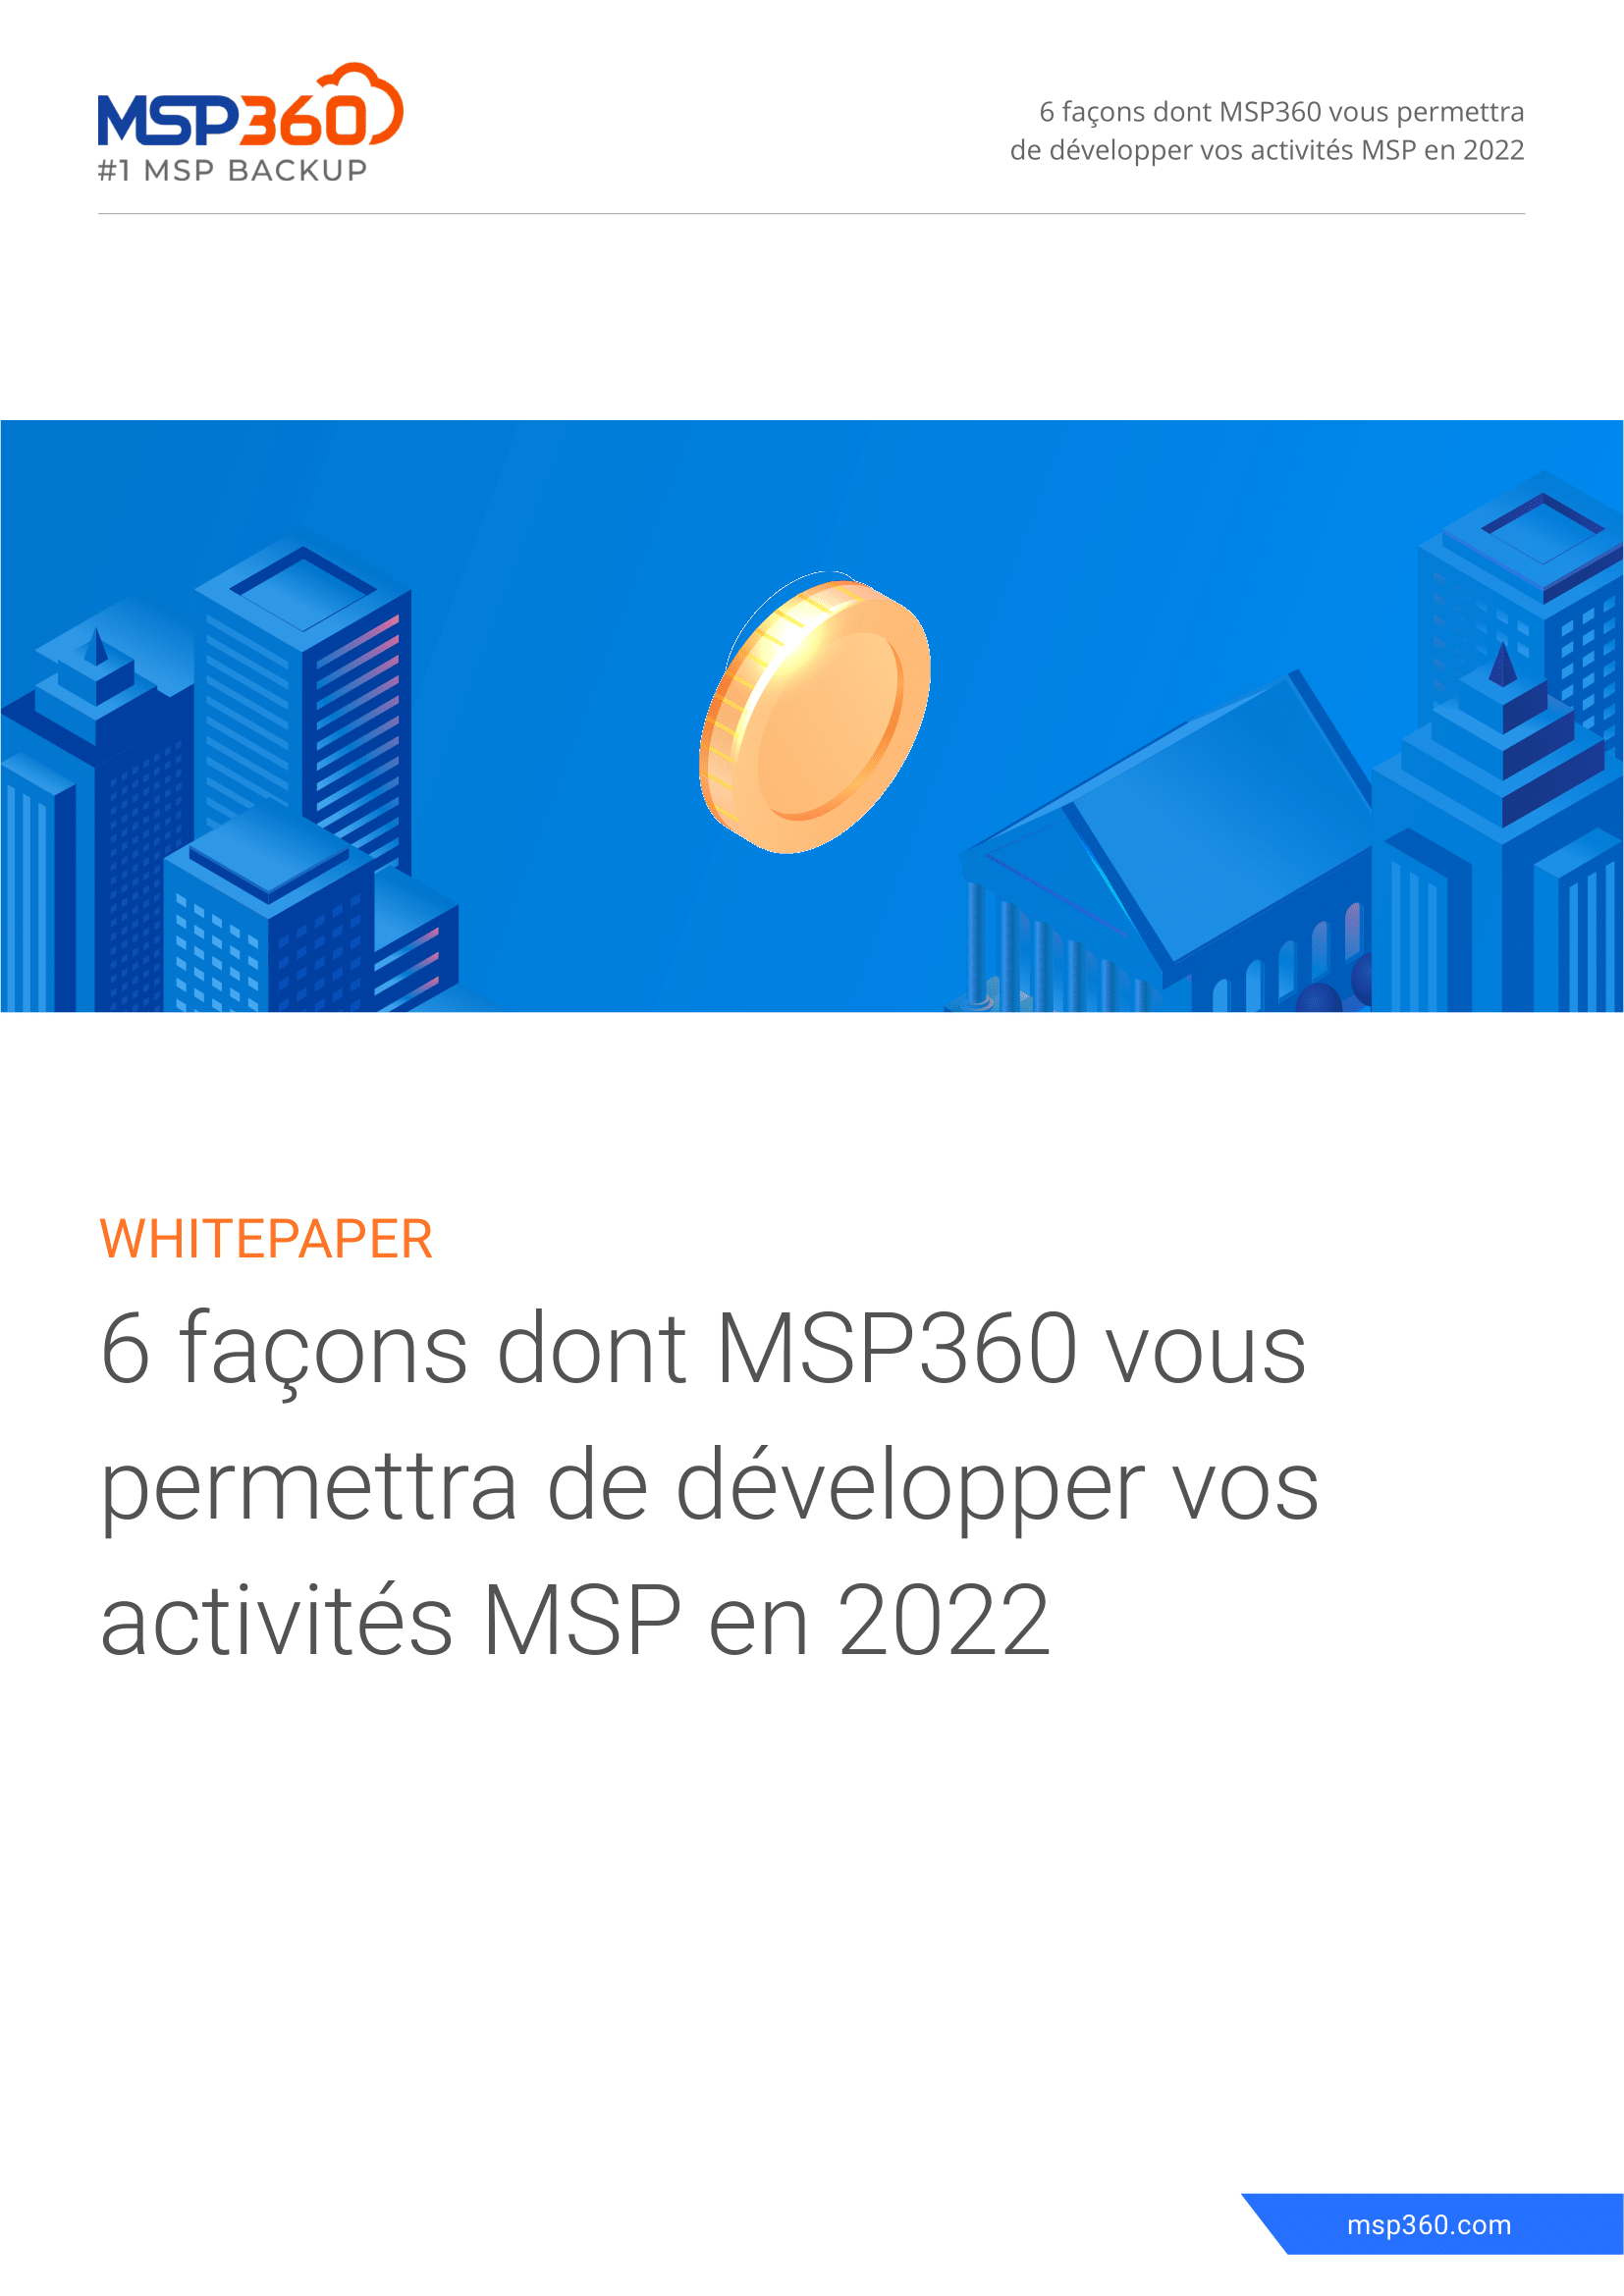 6-facons-dont-msp360-vous-permettra-de-developper-vos-activites-msp-en-2022-1-1